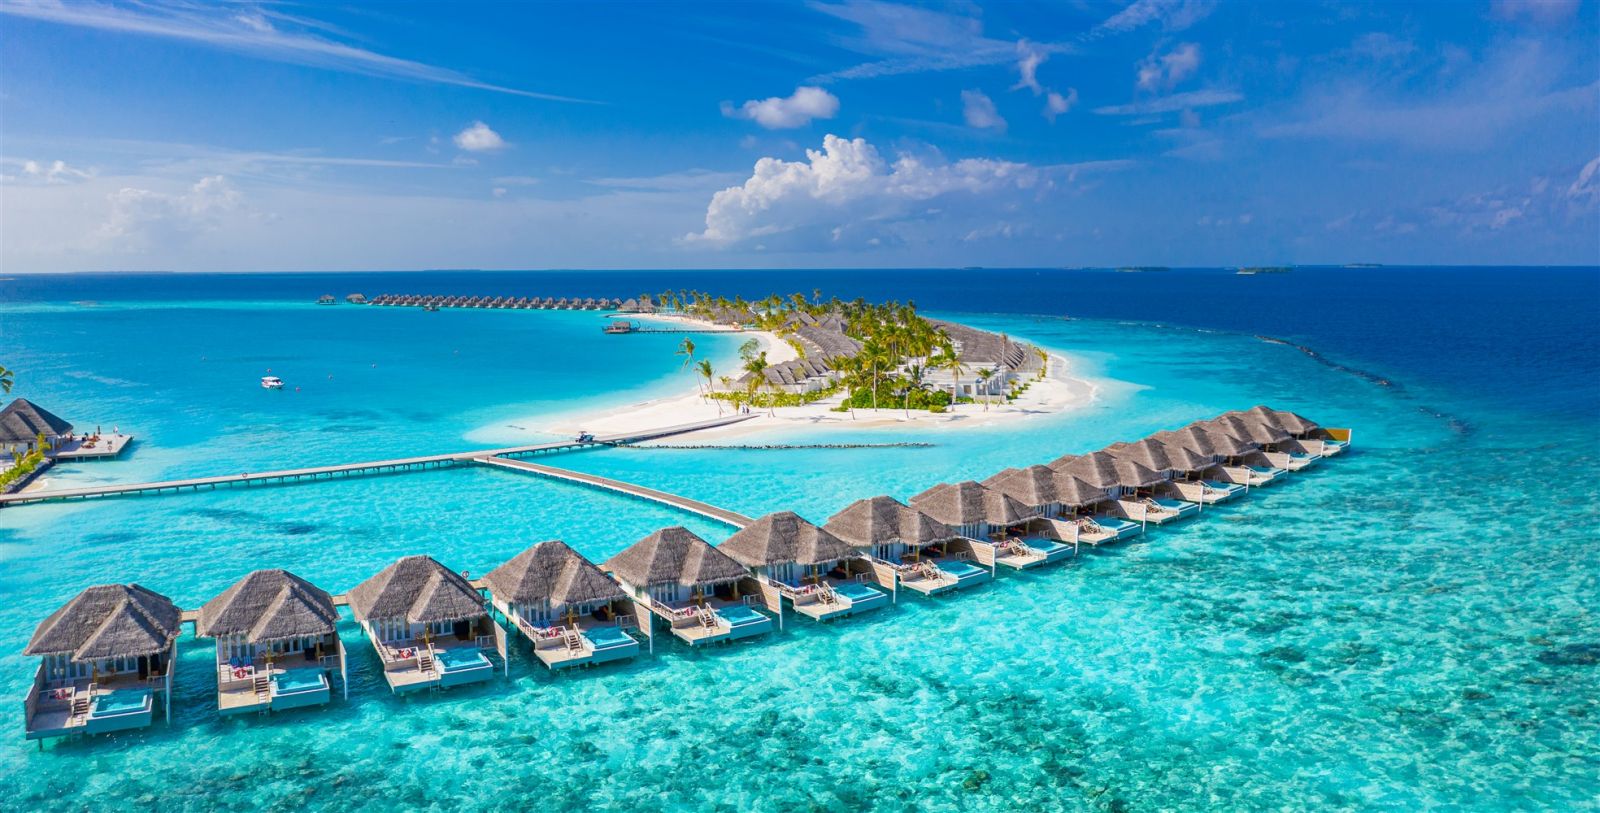 Maldives rộng cửa đón du khách toàn thế giới với chính sách visa vô cùng thông thoáng. Ảnh: Shutterstock